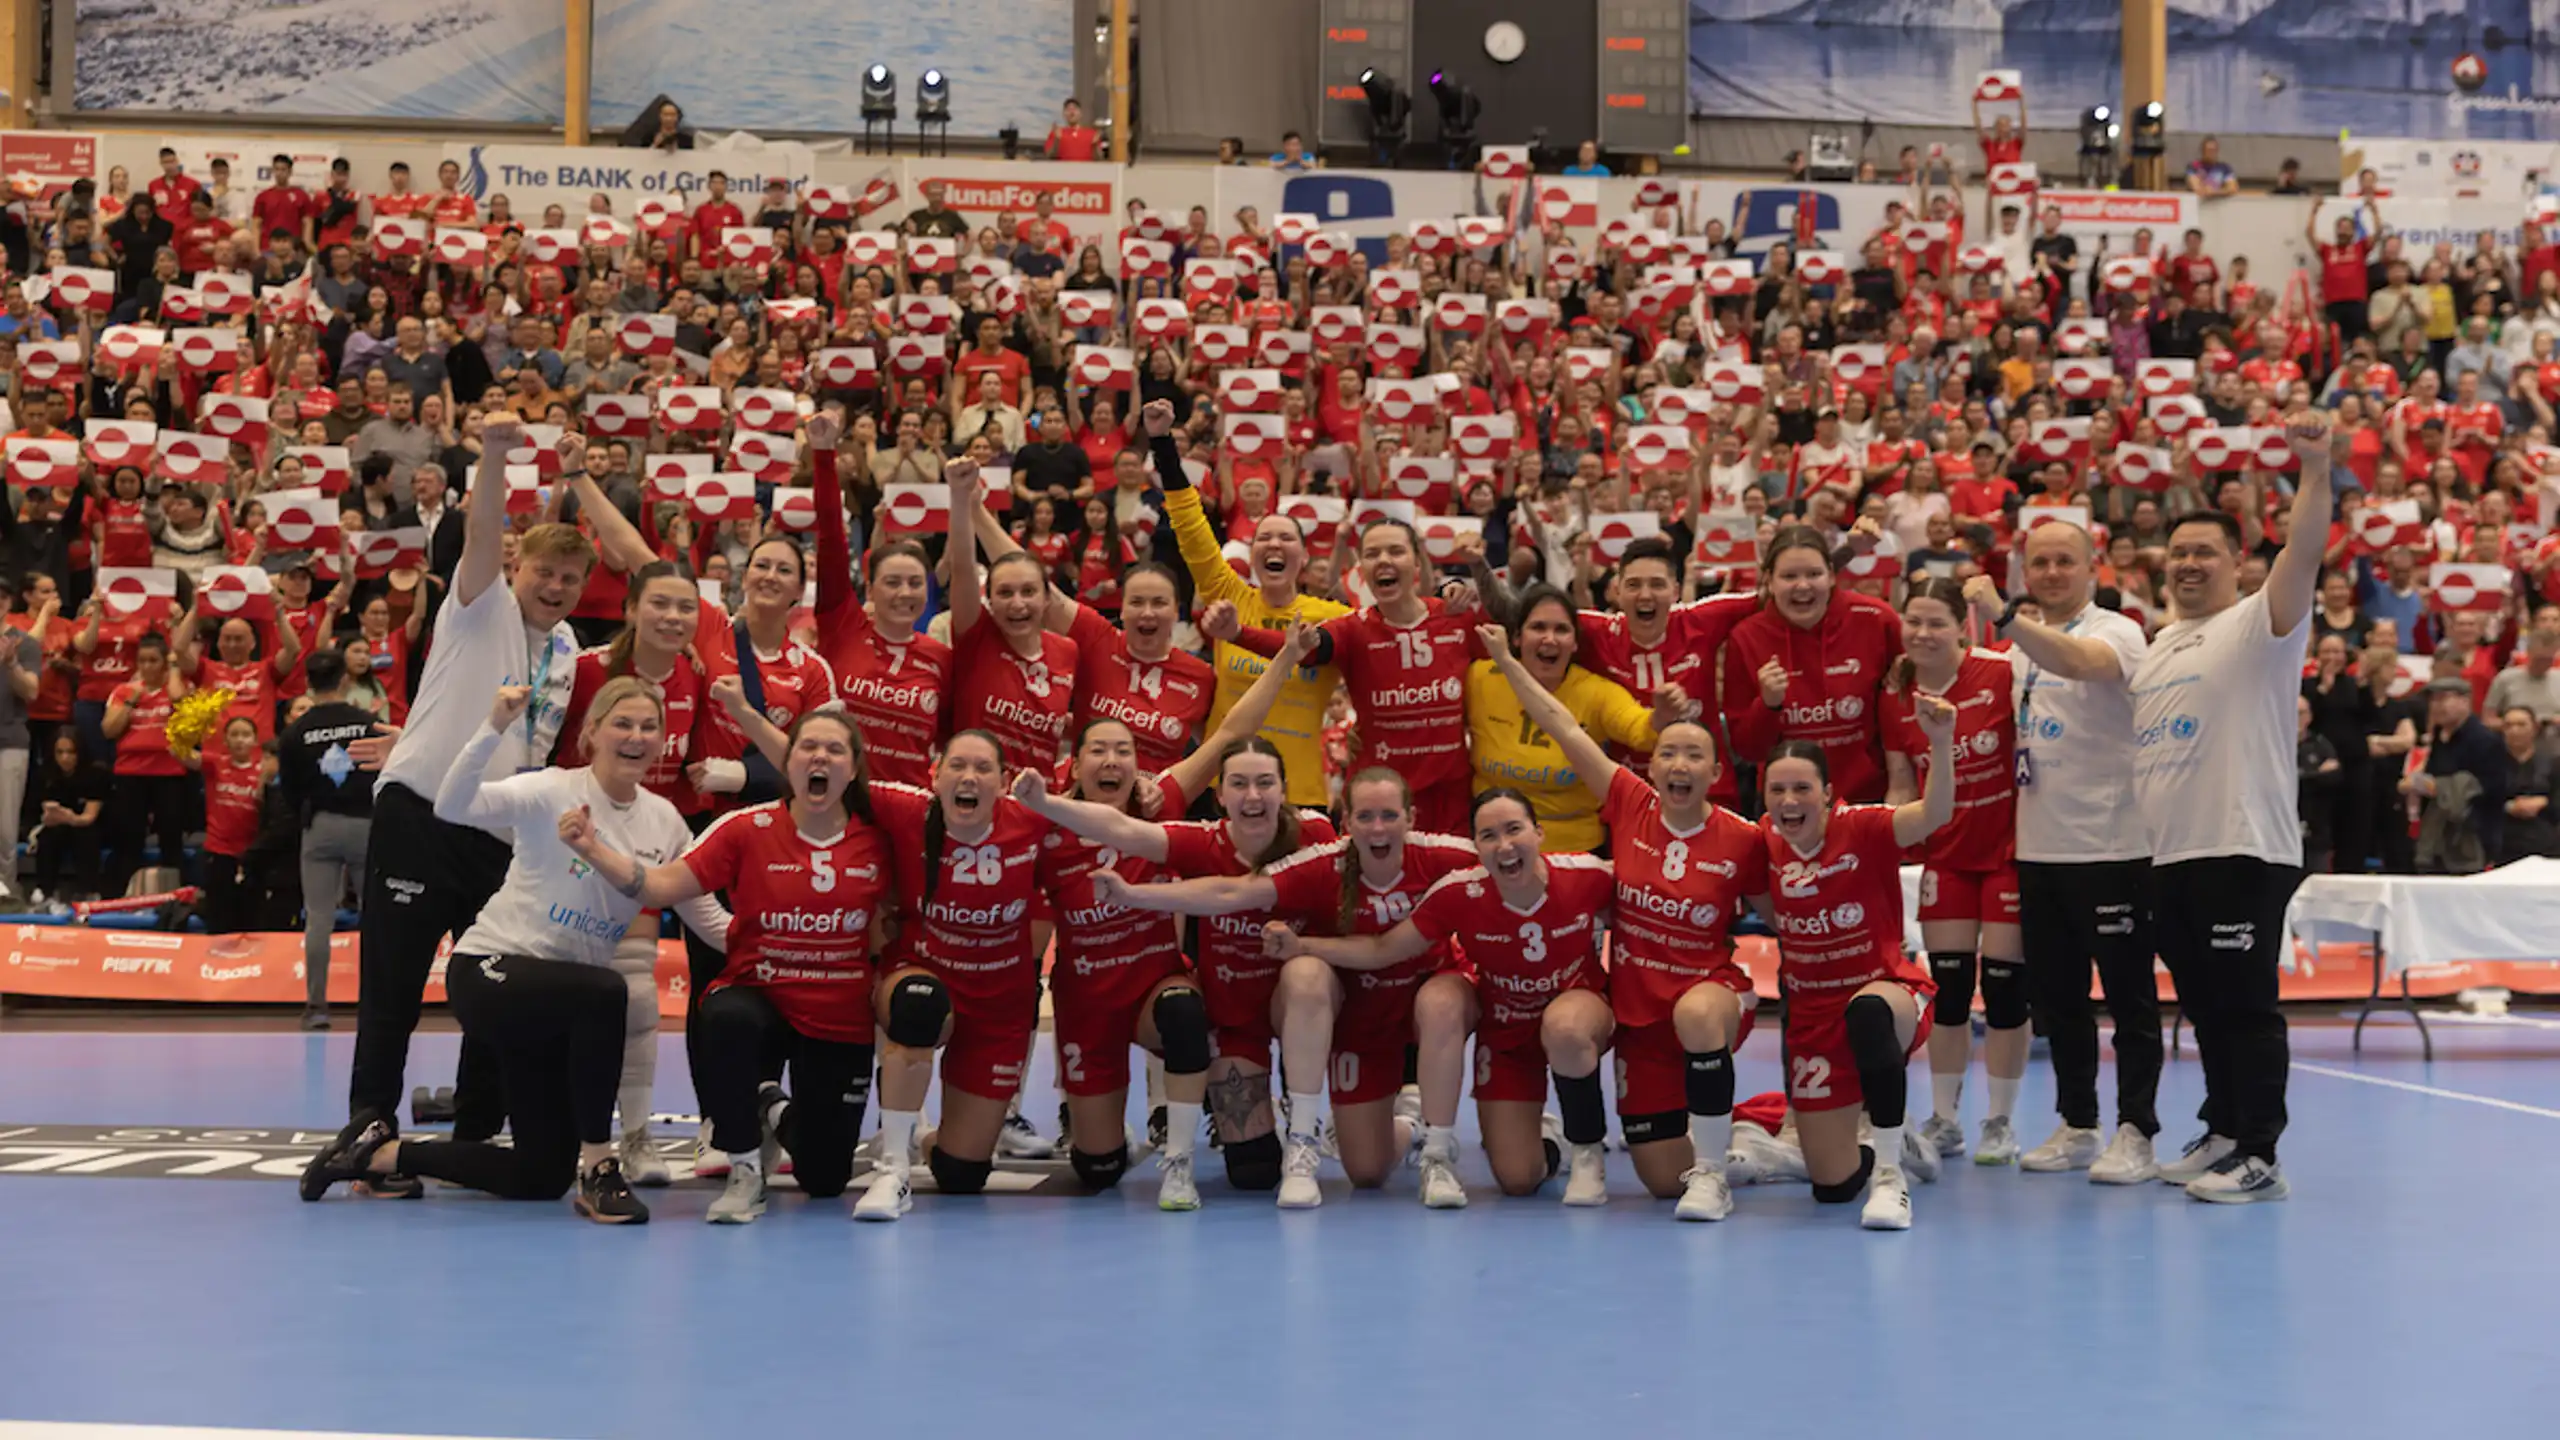 Landsholdet efter de har kvalificeret sig til VM i håndbold 2023. Foto: Lars Kleemann Andersen